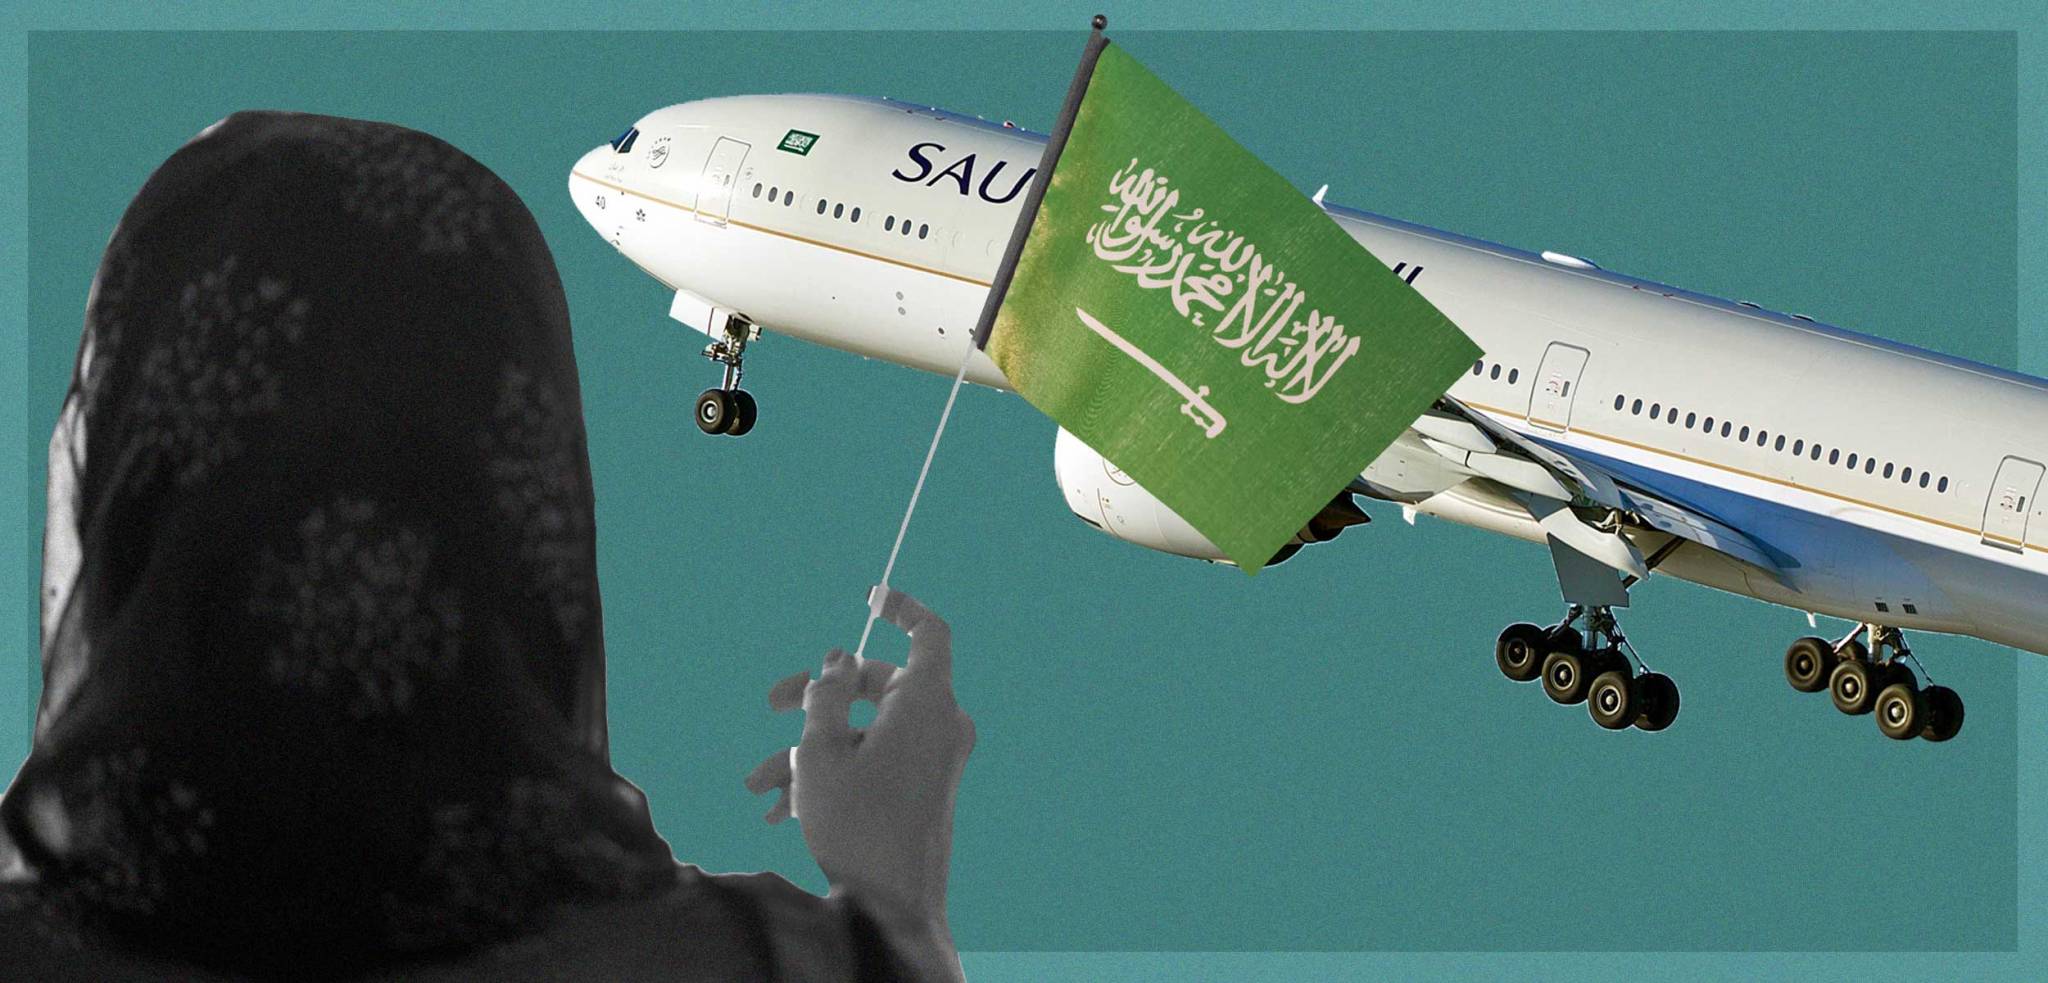 نساء السعودية تحتفل بقرار سفرهن دون إذن ولي الأمر